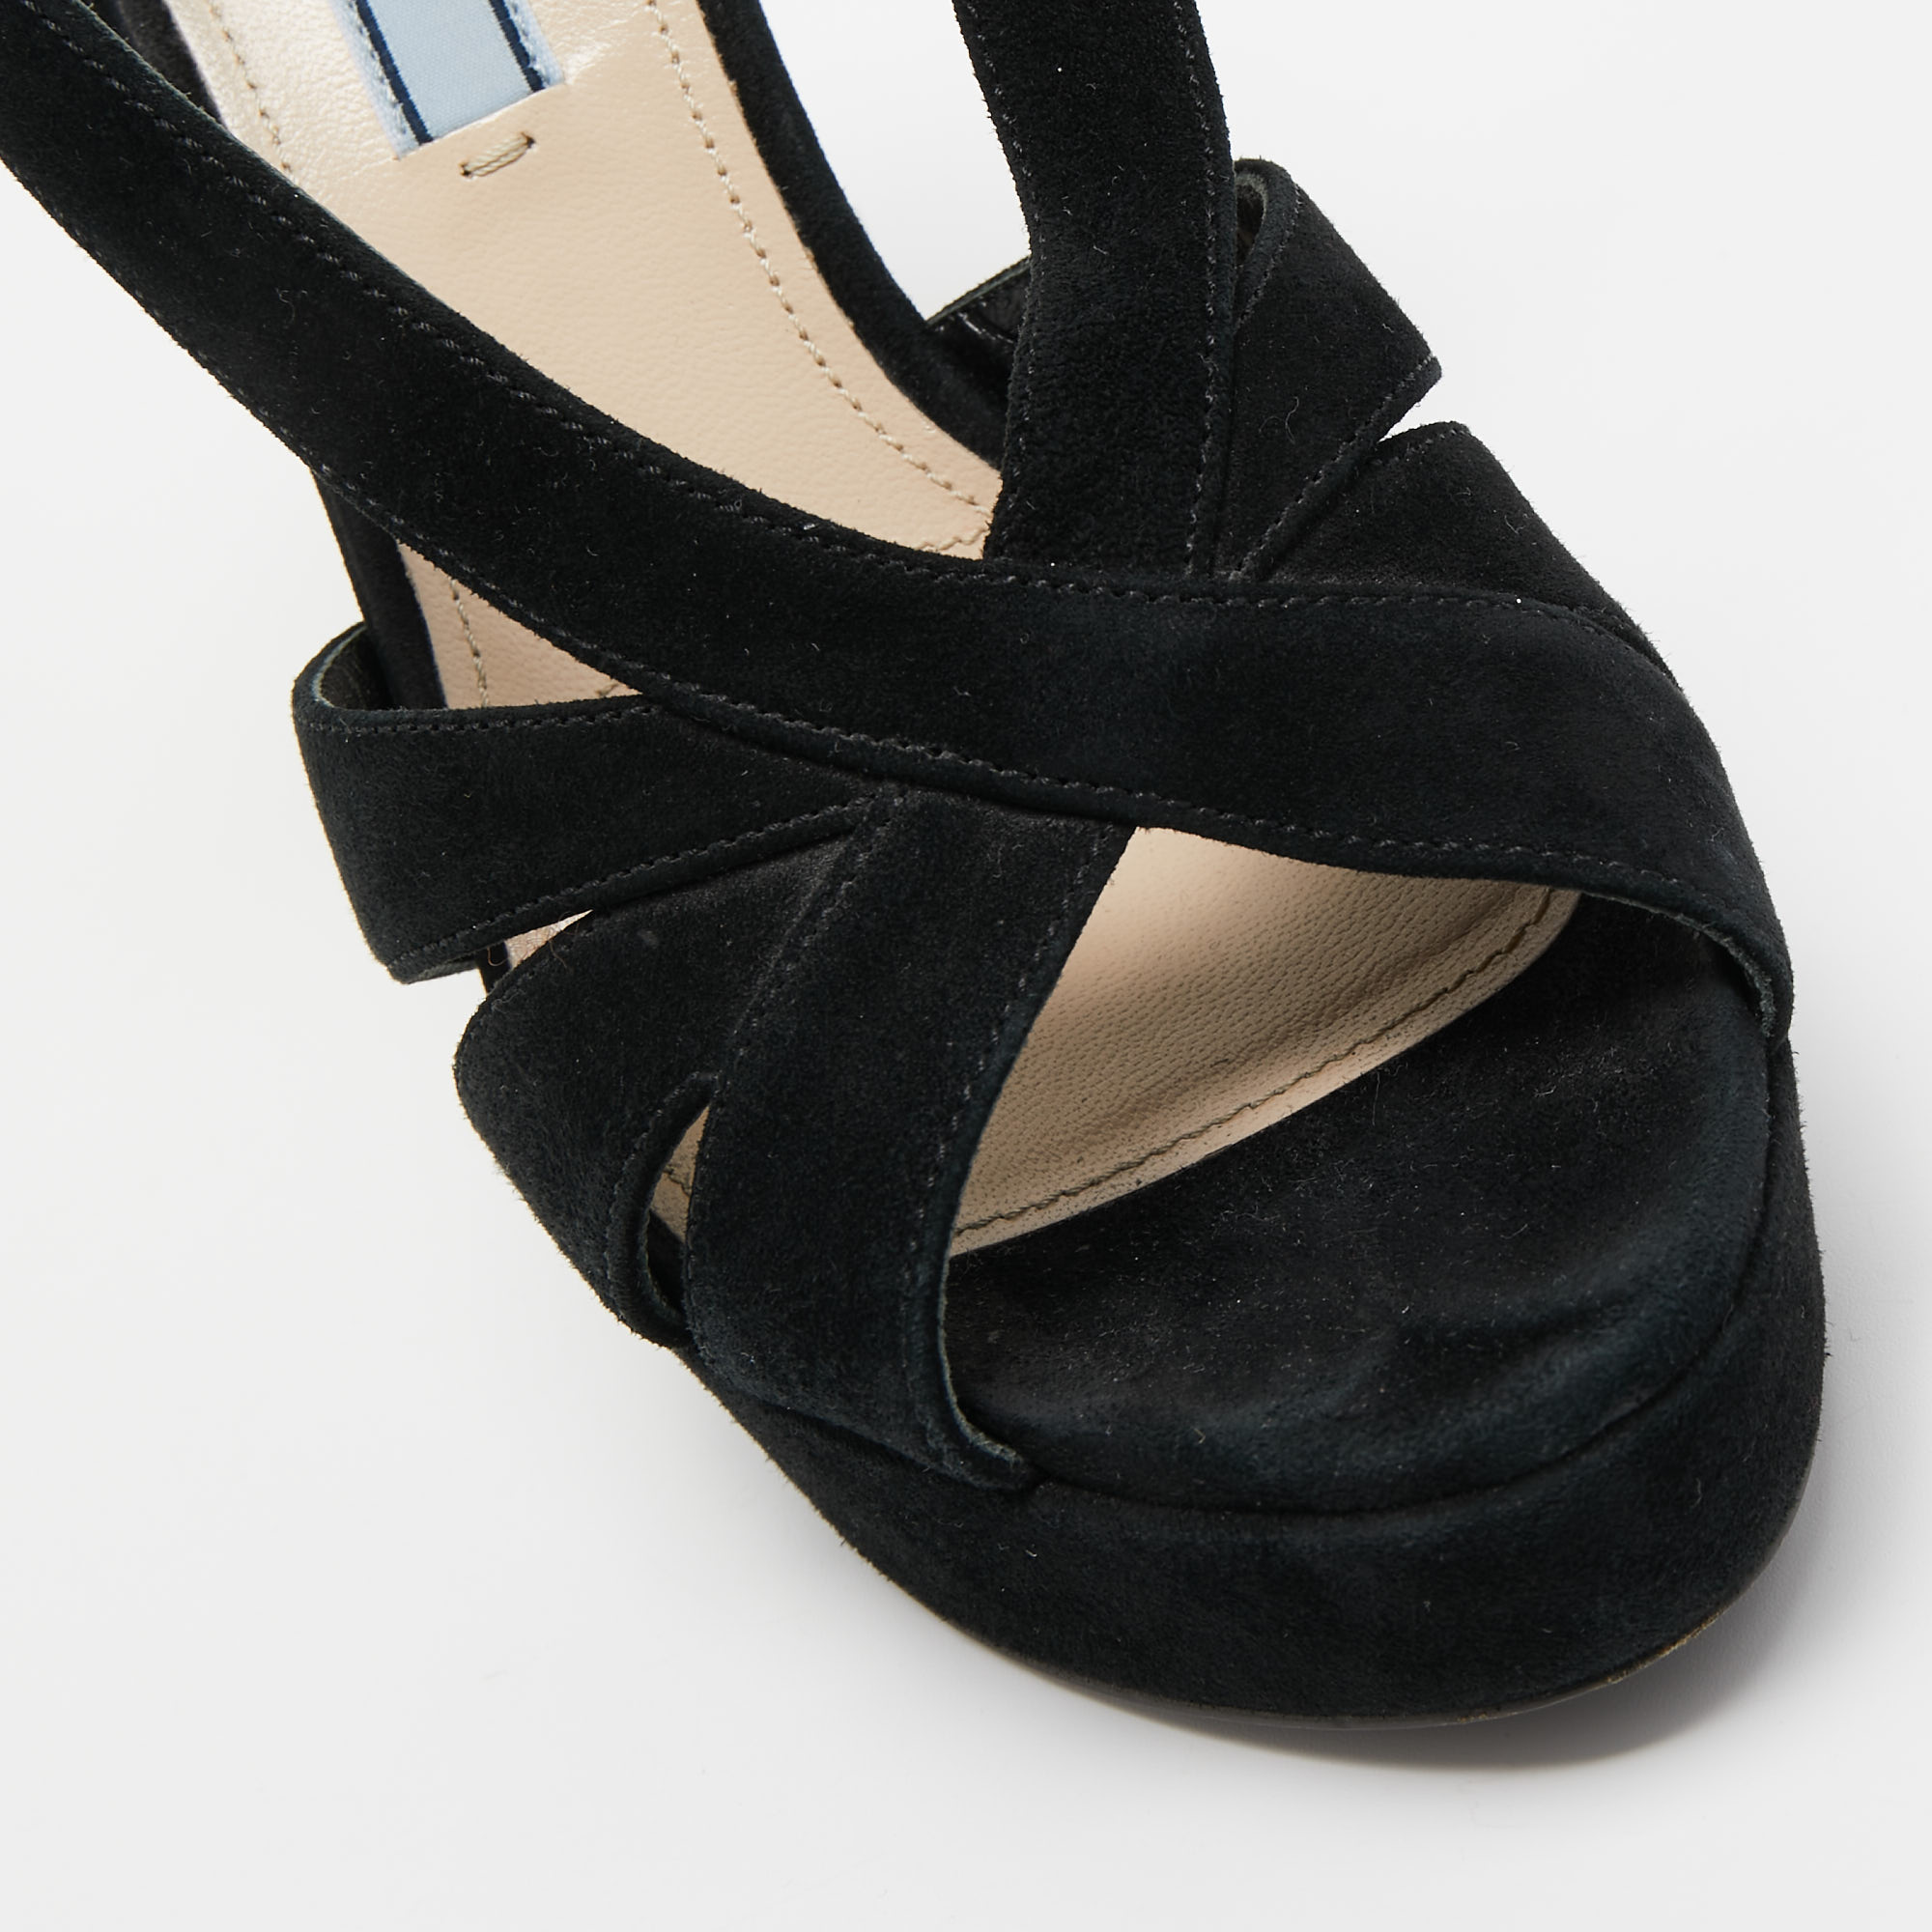 Prada Black Suede Crystal Embellished Heel Platform Slingback Sandals Size 37